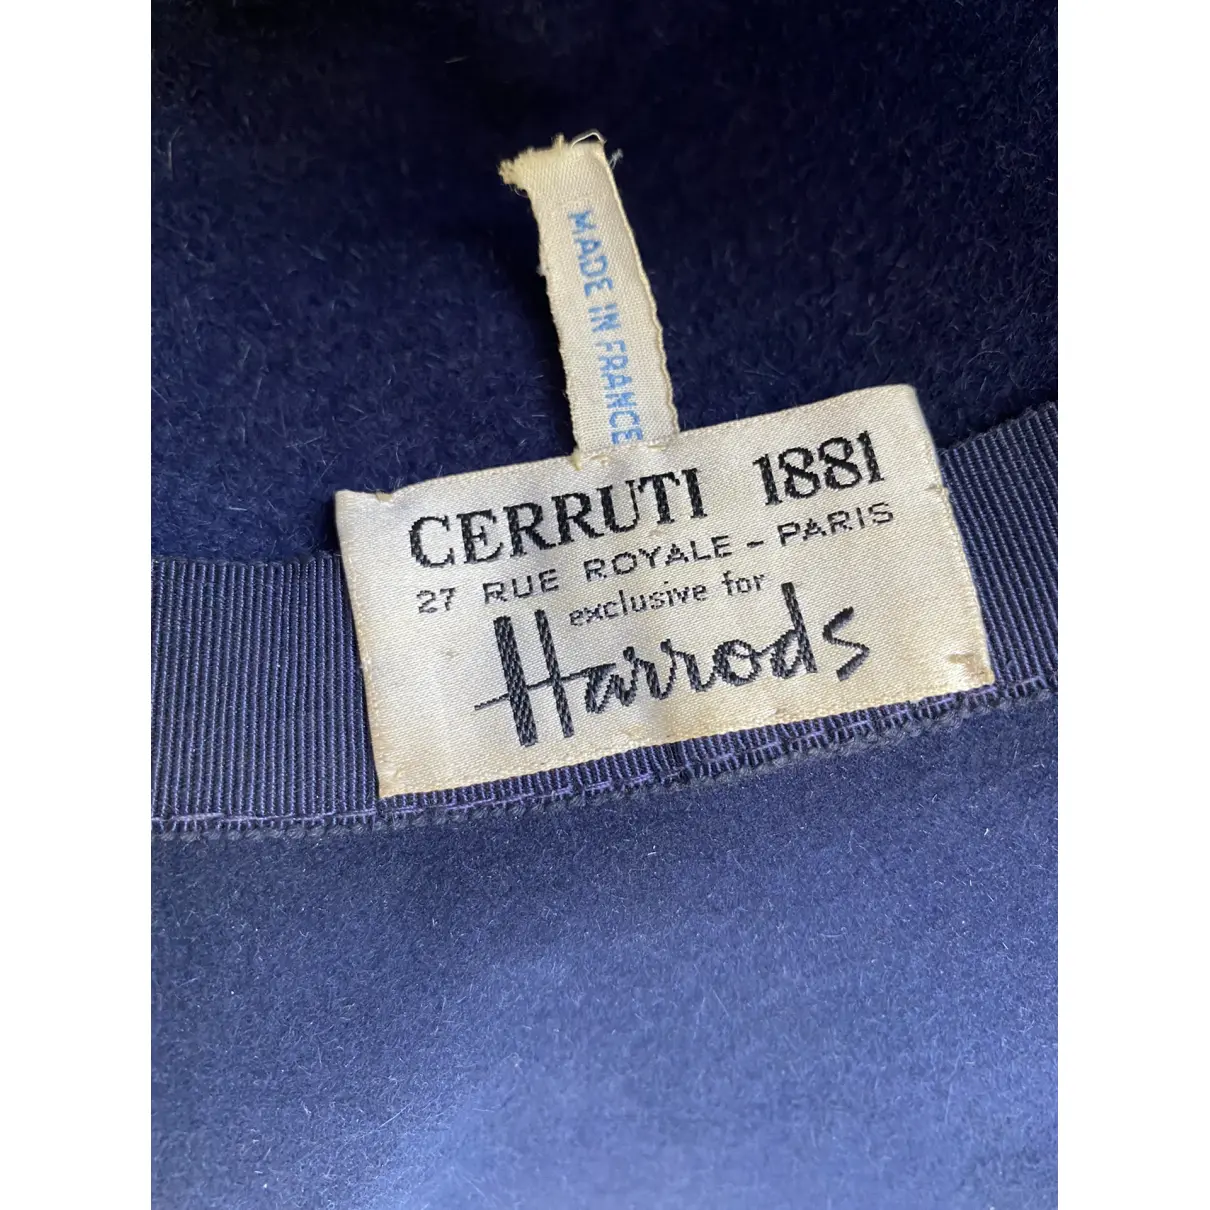 Buy Cerruti Wool hat online